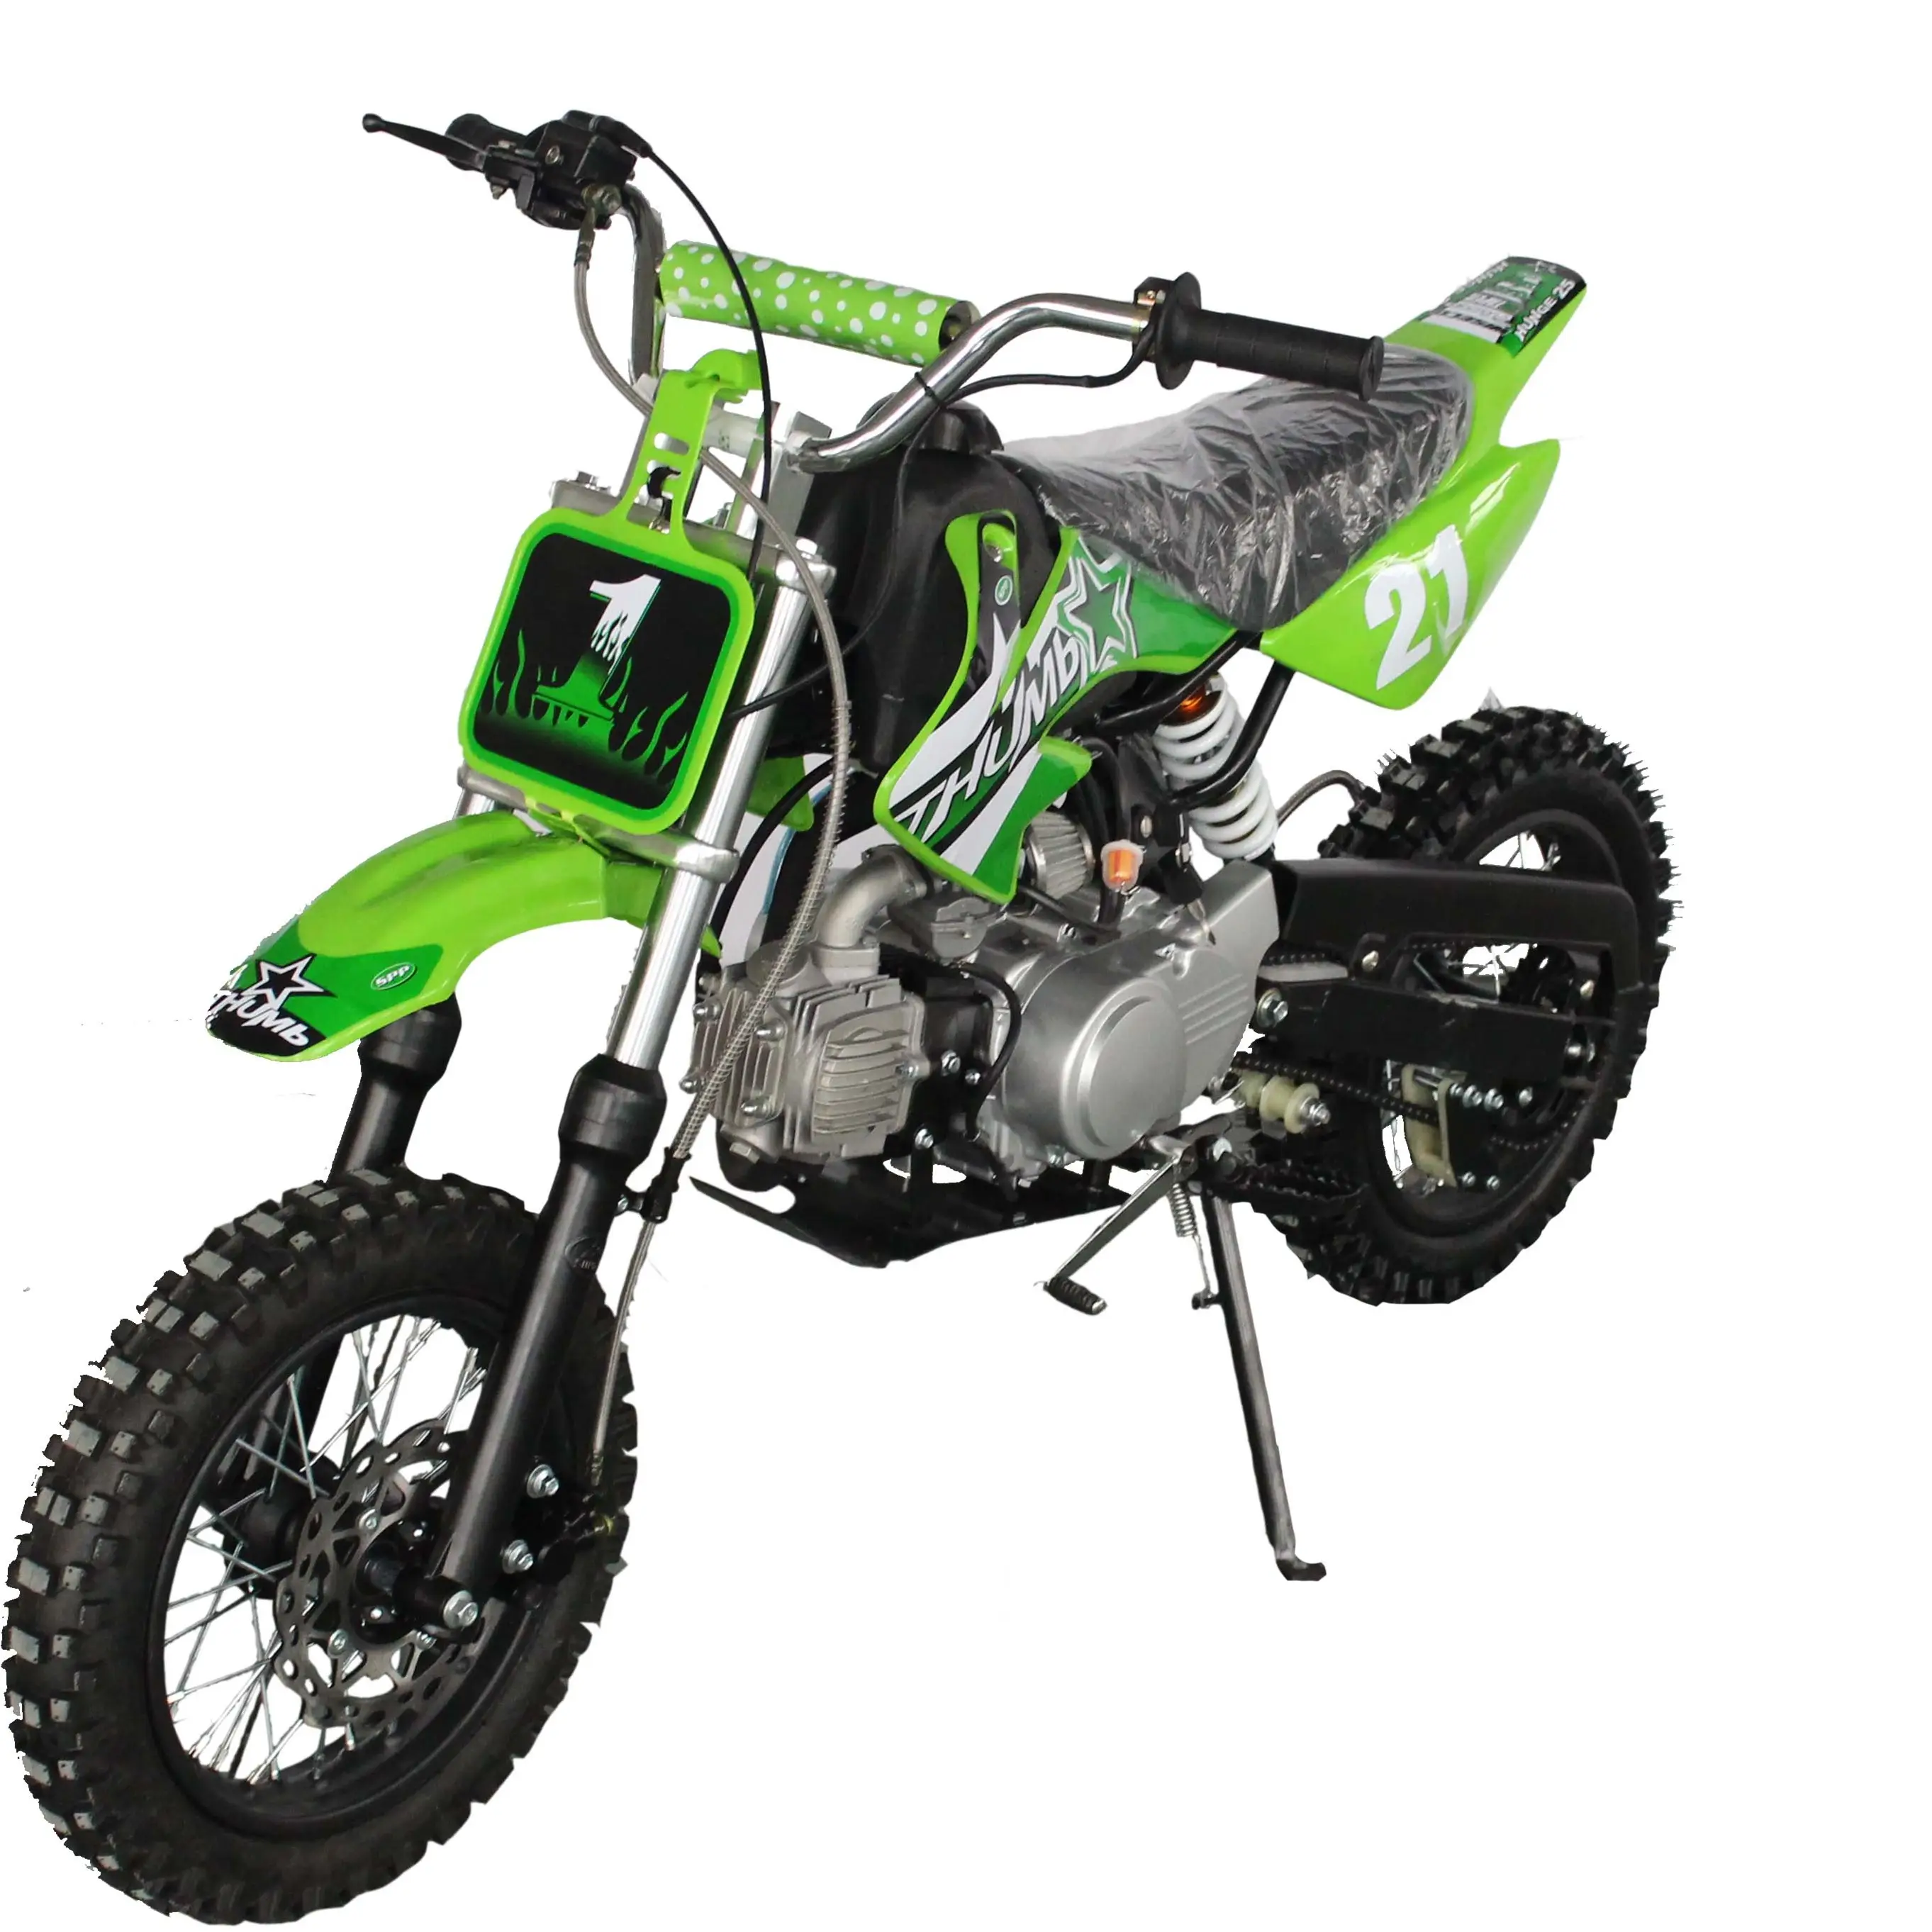 1250cc dirt bike automático para adultos, motocicleta para motocicleta, cross country, bicicleta automática para adultos